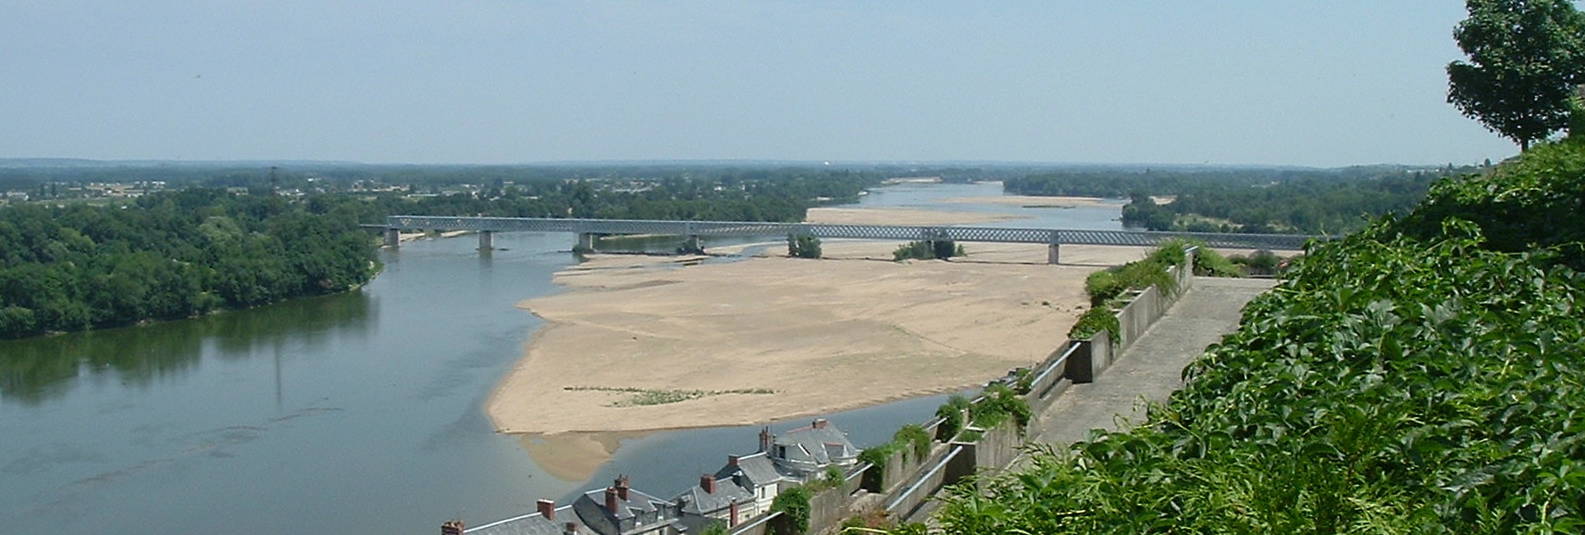 Loire river at Saumur, France.